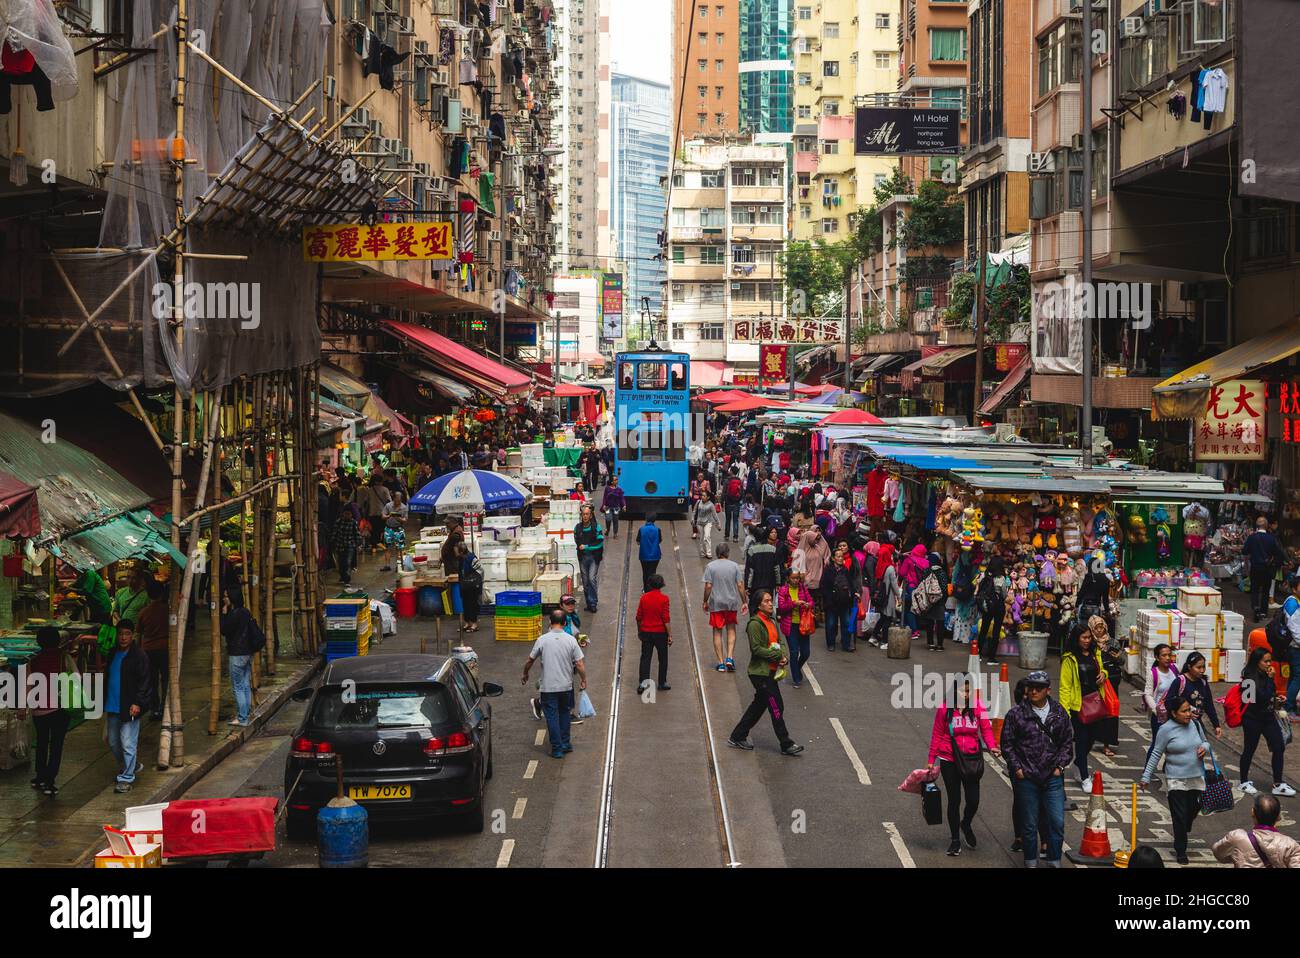 26 novembre 2017 : rue Chun Yeung, un grand marché humide avec une ligne de tramway traversant le centre, situé au point nord, hong kong, chine. Banque D'Images